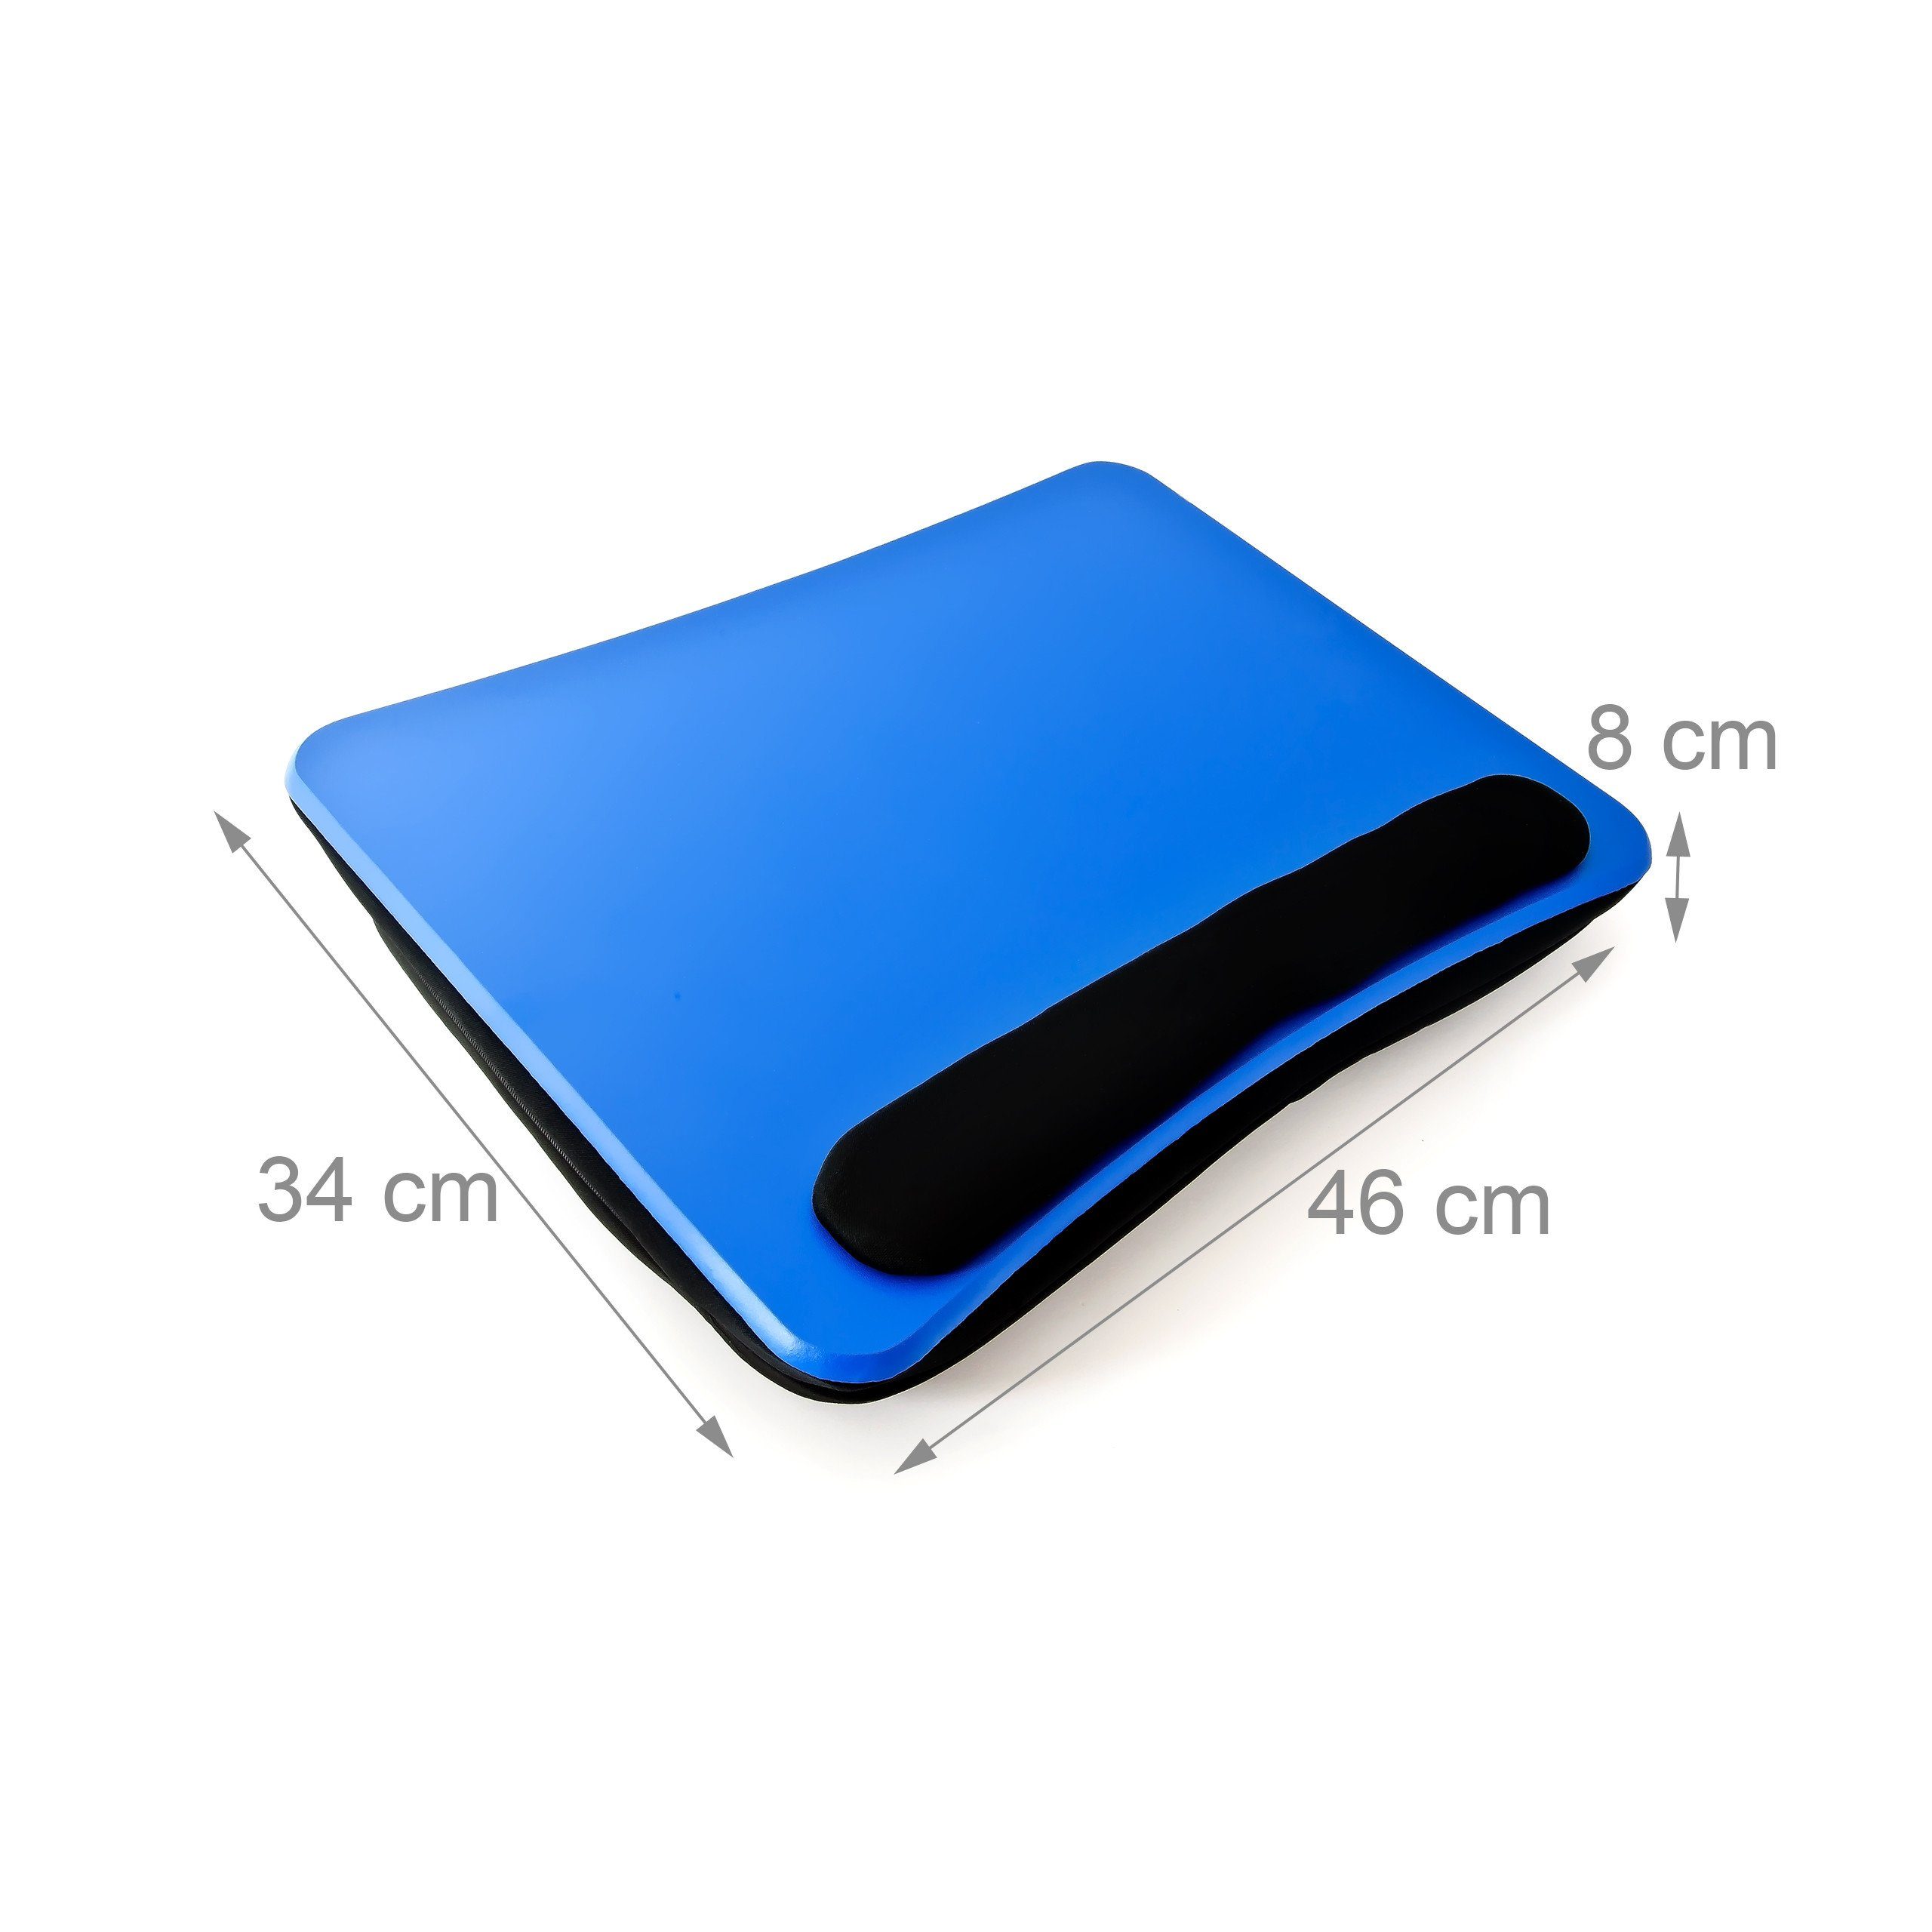 relaxdays Laptop Tablett Handauflage Laptopkissen Blau, mit Faserplatte